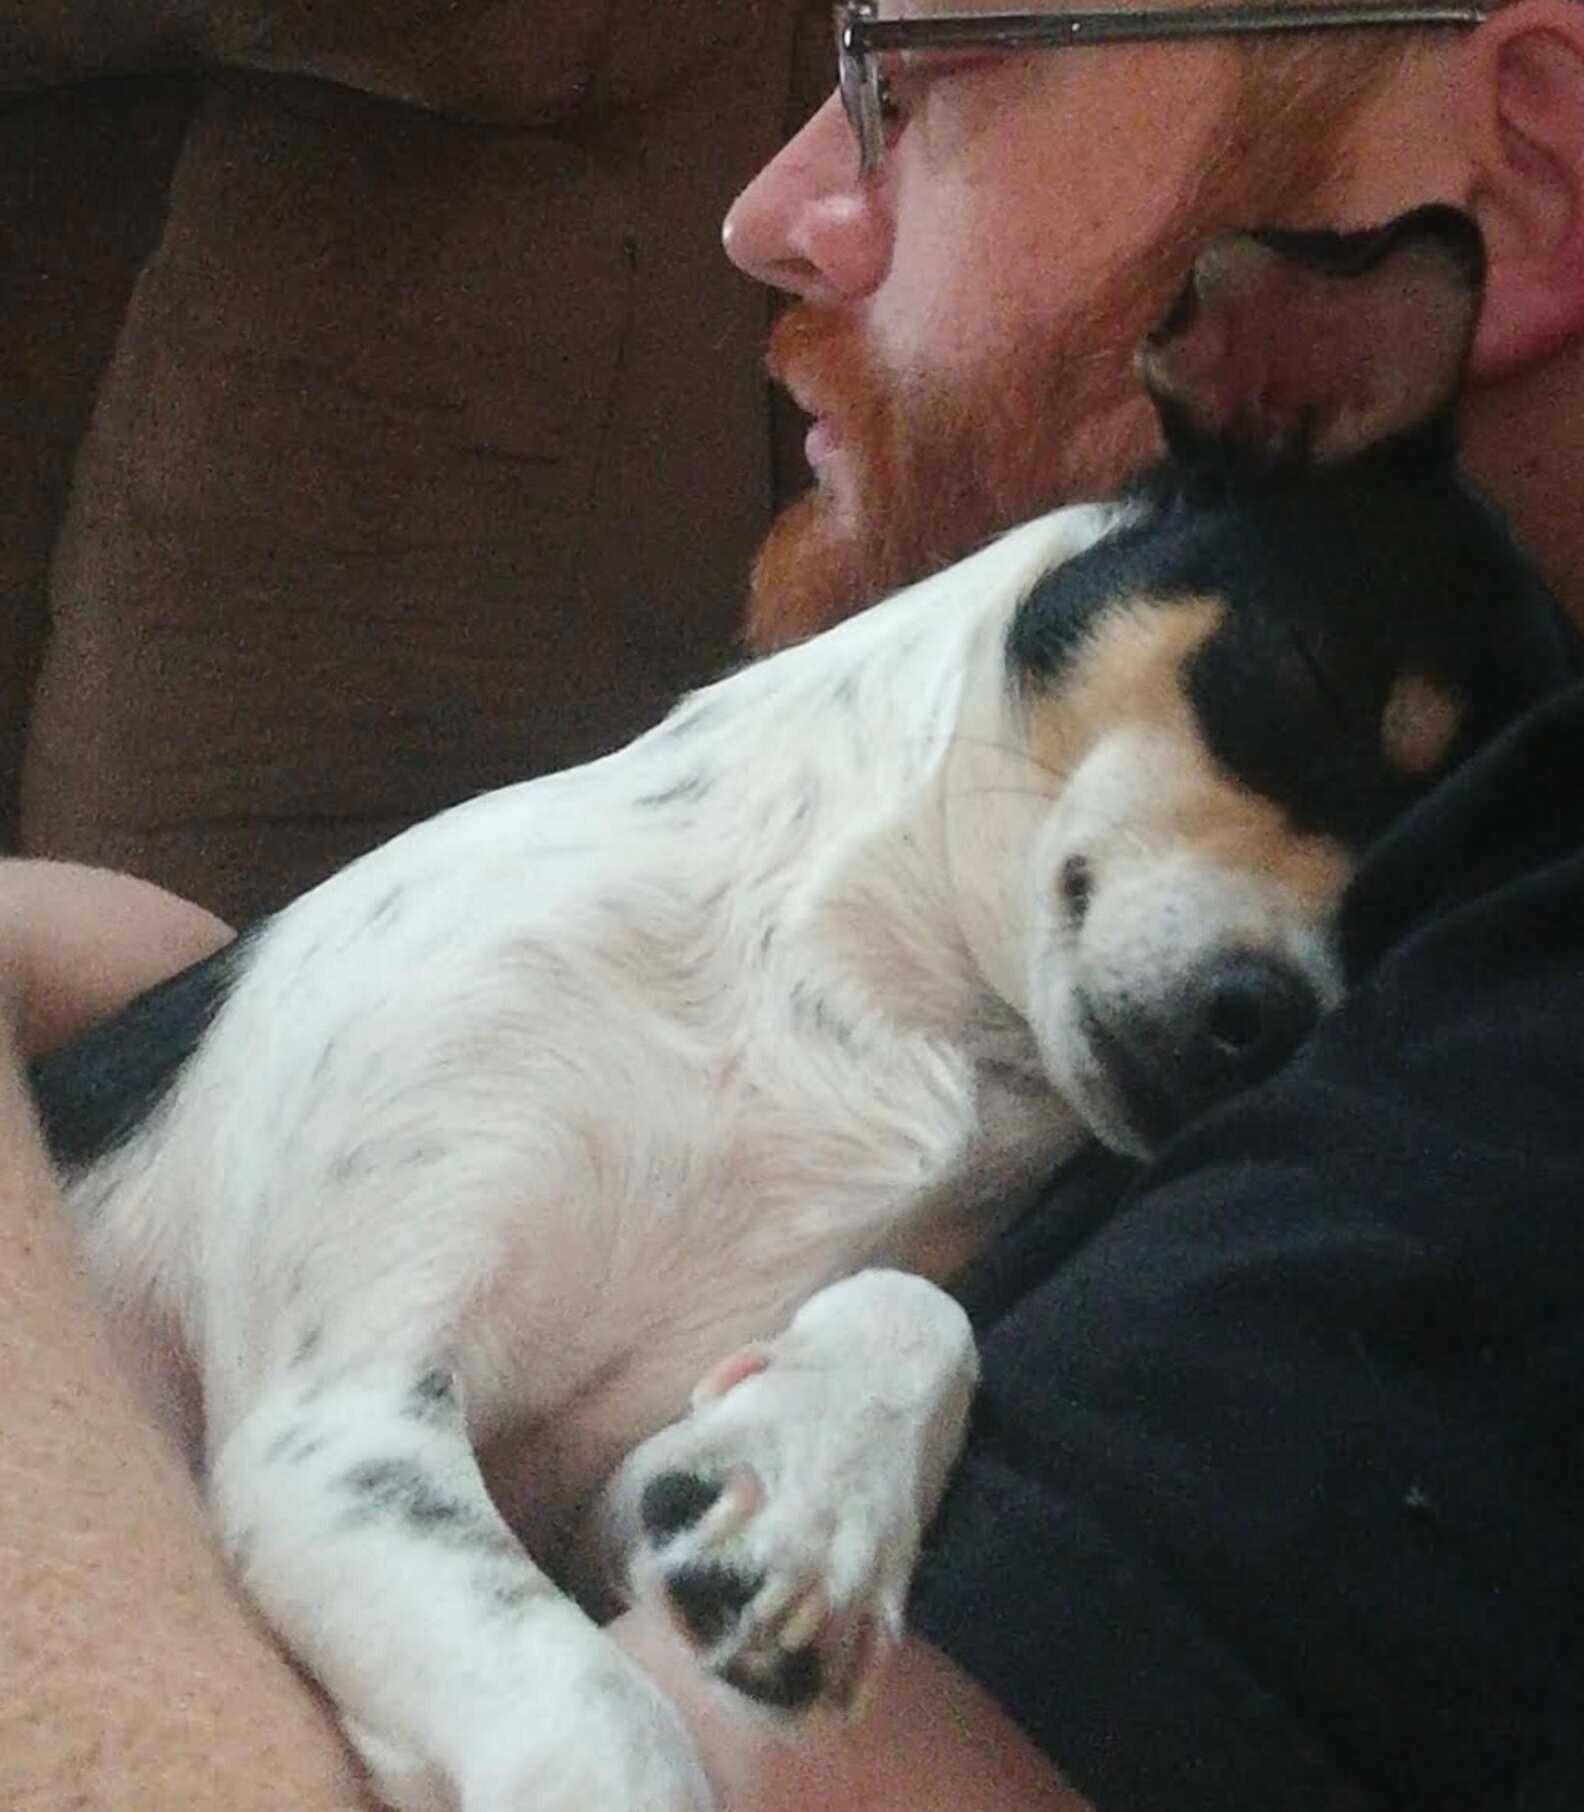 stella cuddling with new dad